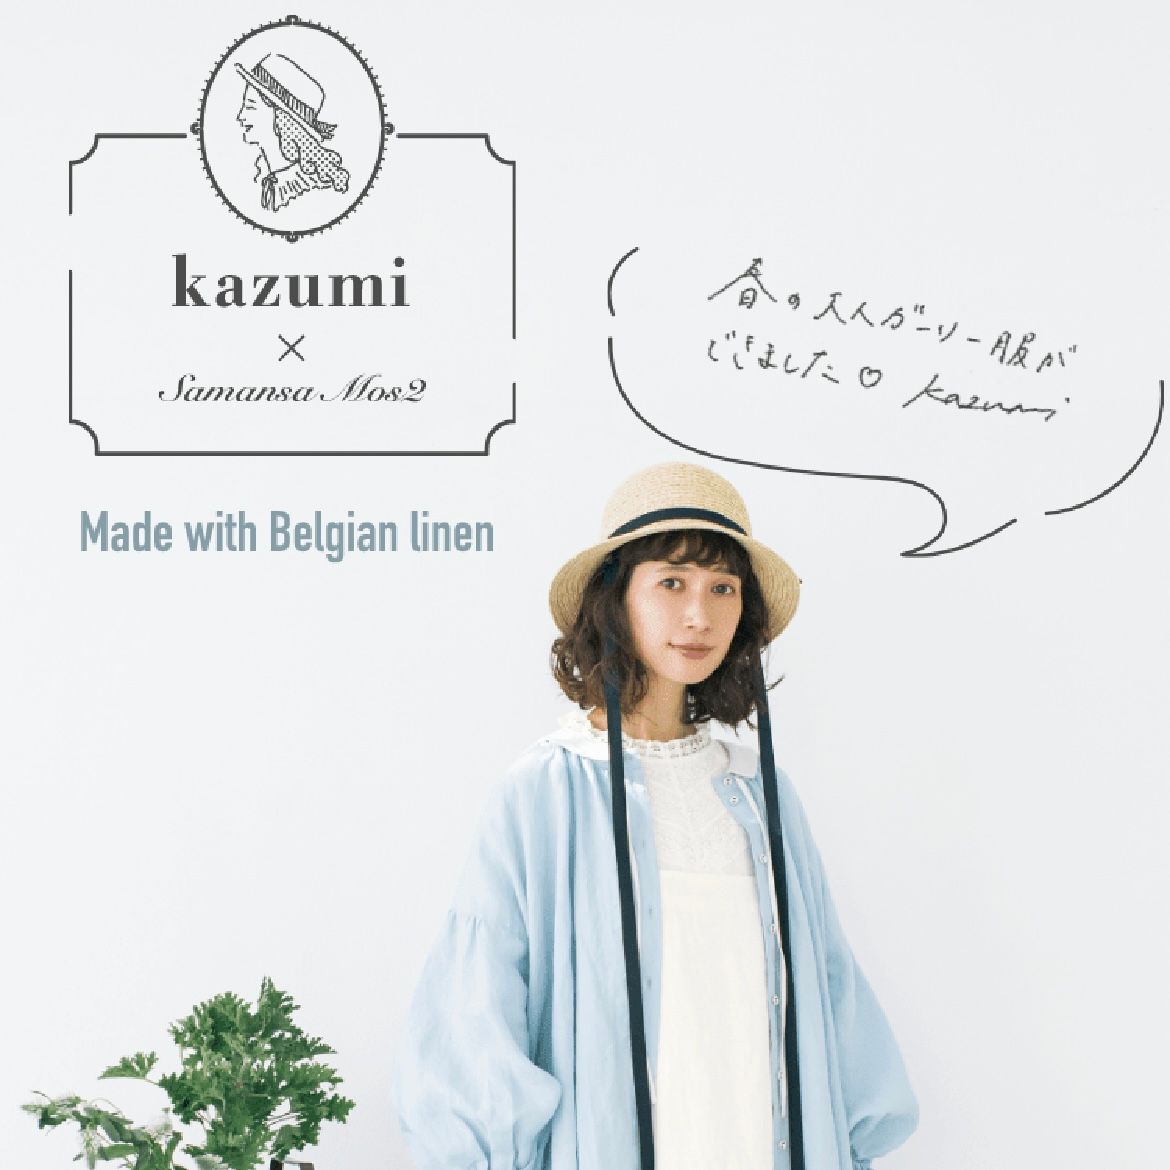 【SM2】kazumiさんとのコラボ商品のご紹介⭐︎低身長コーデ𓂃𓈒𓏸𓐍